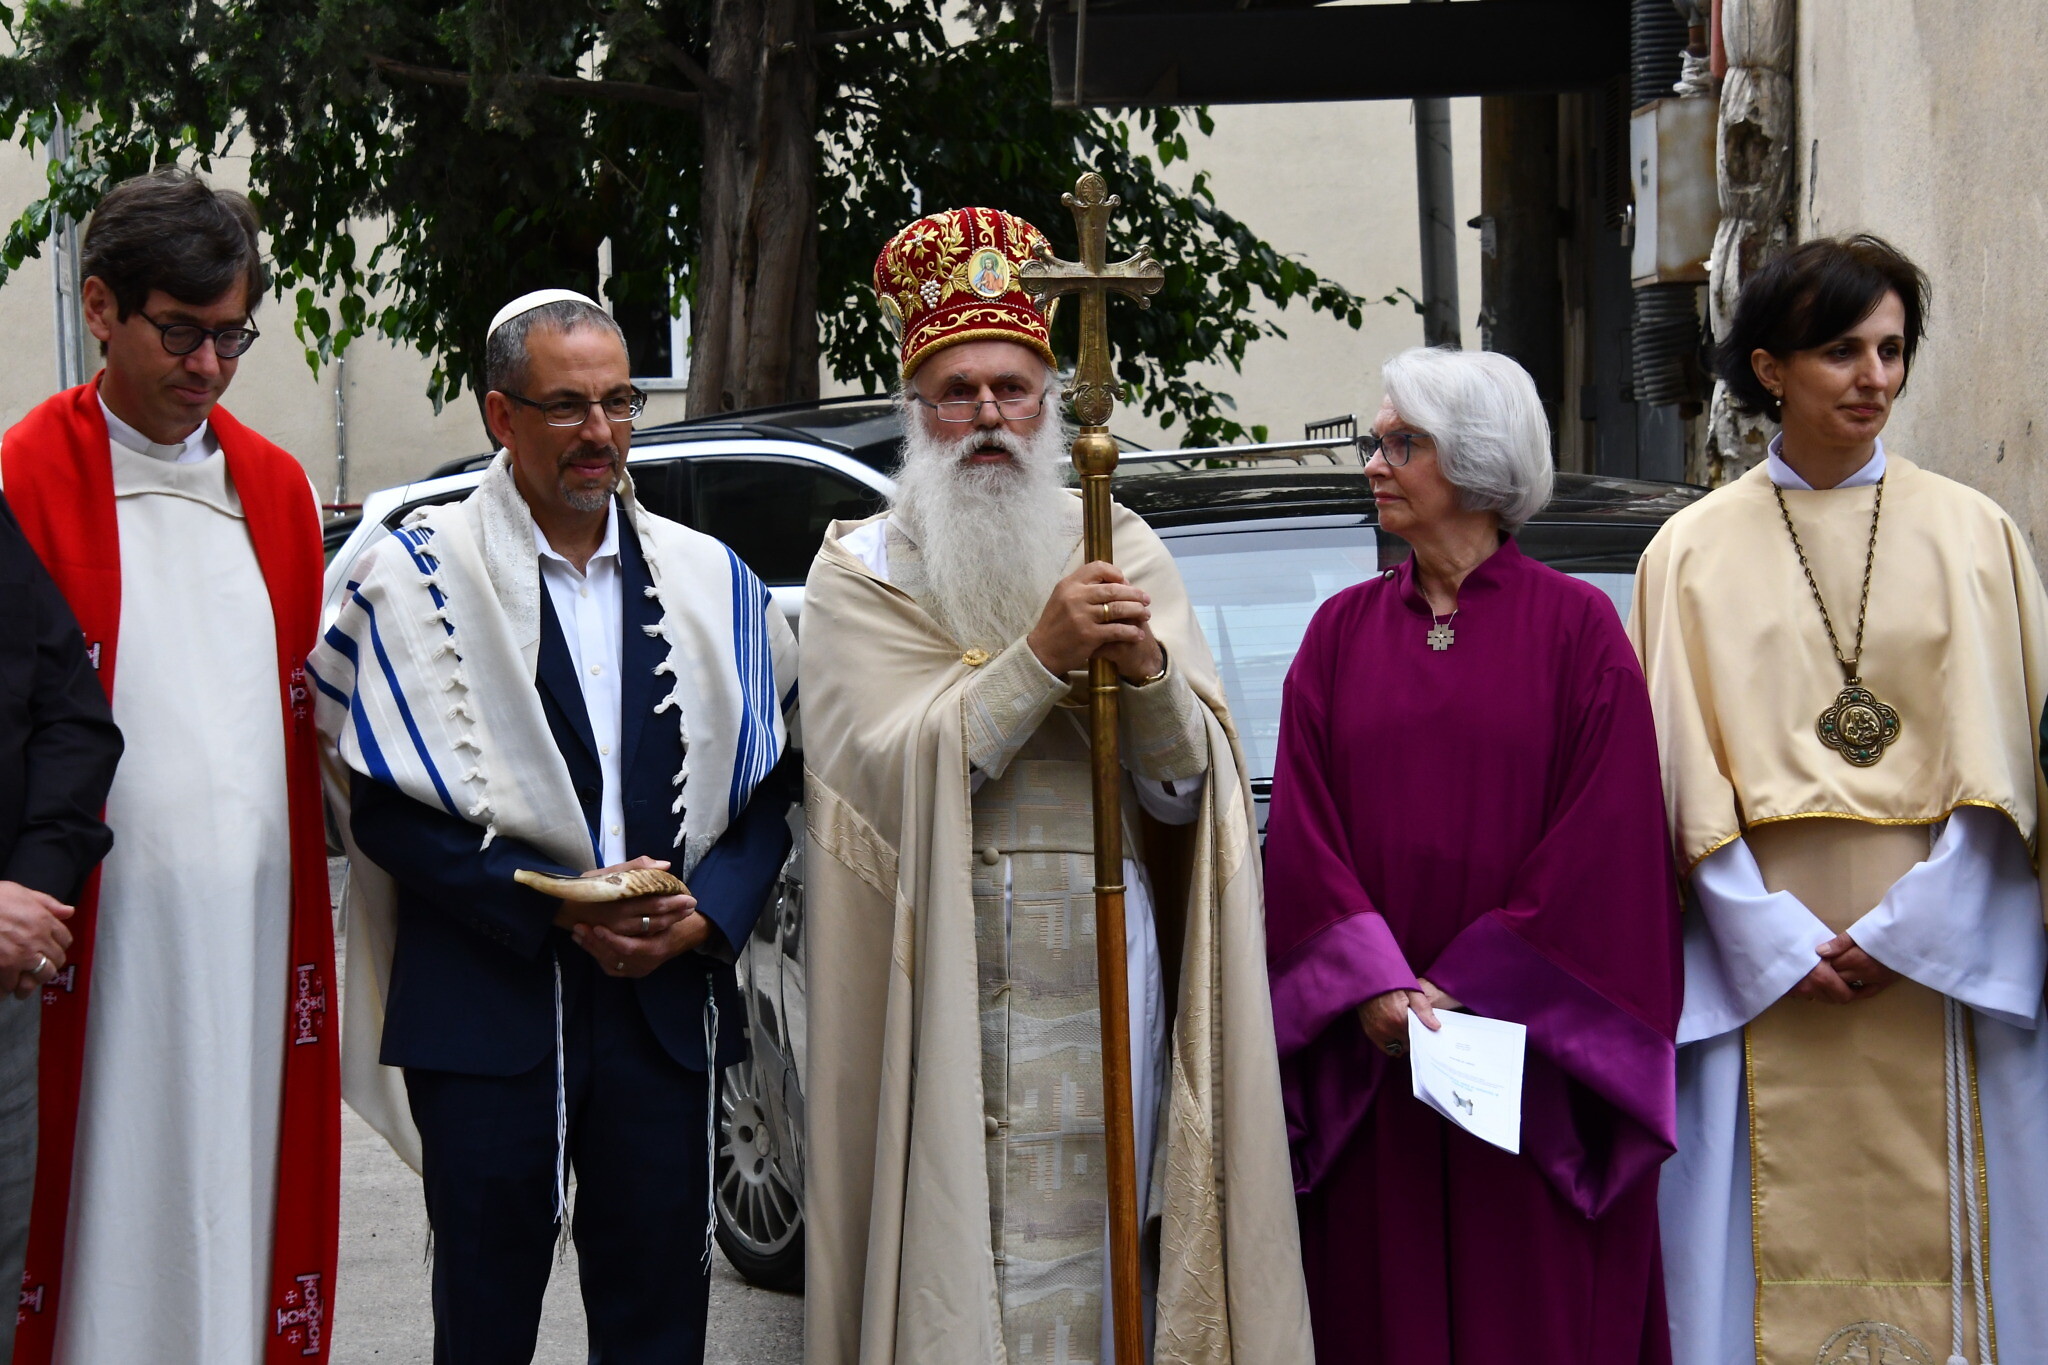 Des membres du clergé de la cathédrale de la paix et de ses inspirations, notamment la Maison de l'Un à Berlin, vus à l'extérieur du complexe à Tbilissi. (Crédit : Nano Saralishvili/via JTA)